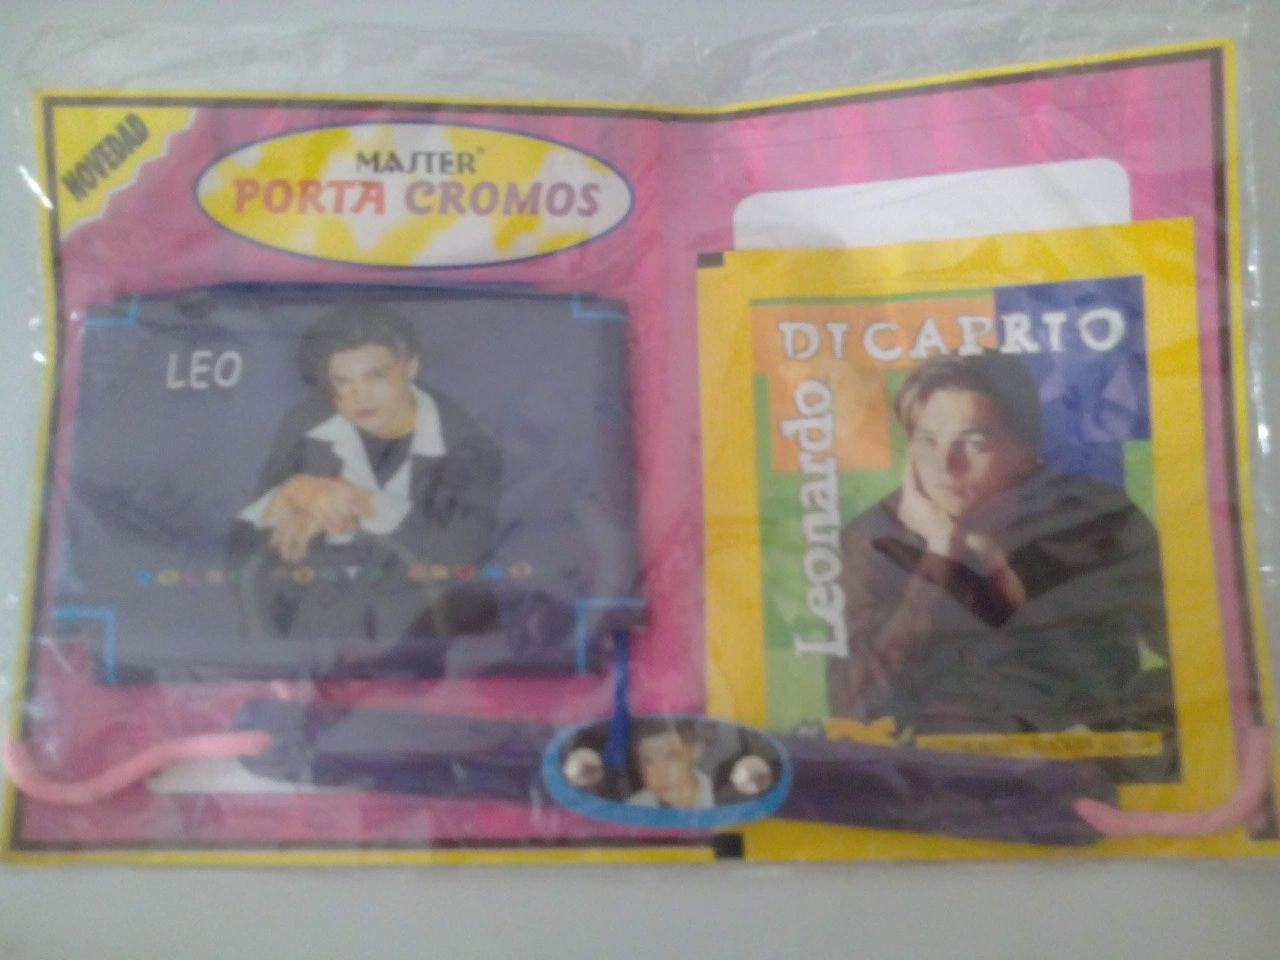 Cromos/pulseira da Colecção Leonardo de Caprio